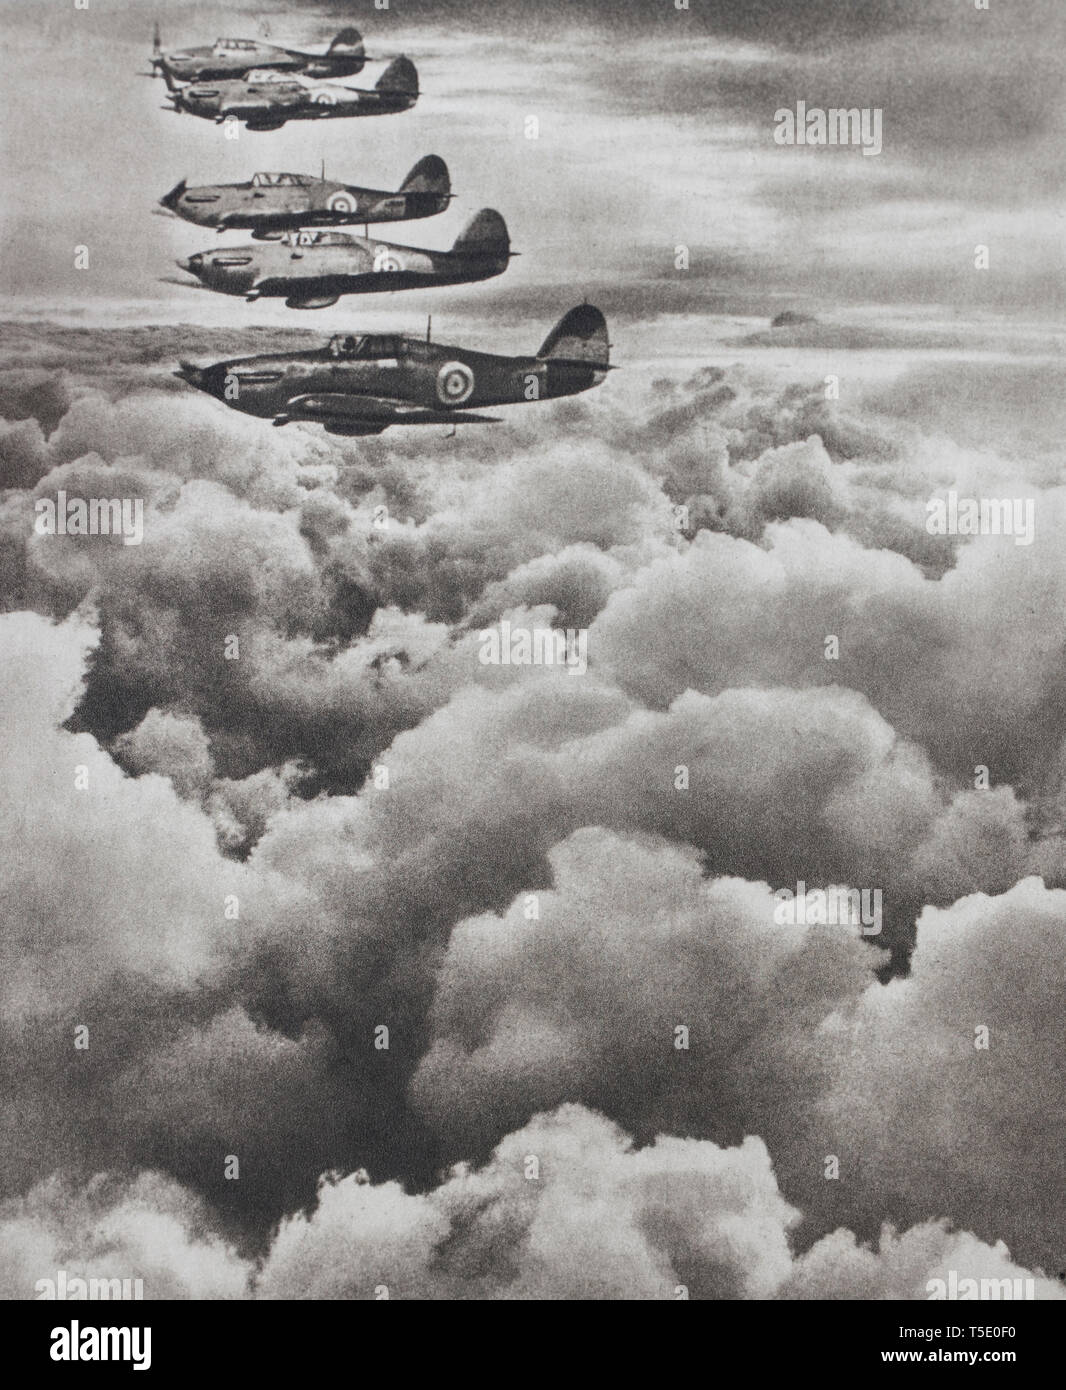 En el mirador de bombarderos alemanes. Un escuadrón de British "Huracán" aviones de combate es de patrulla. Foto de stock